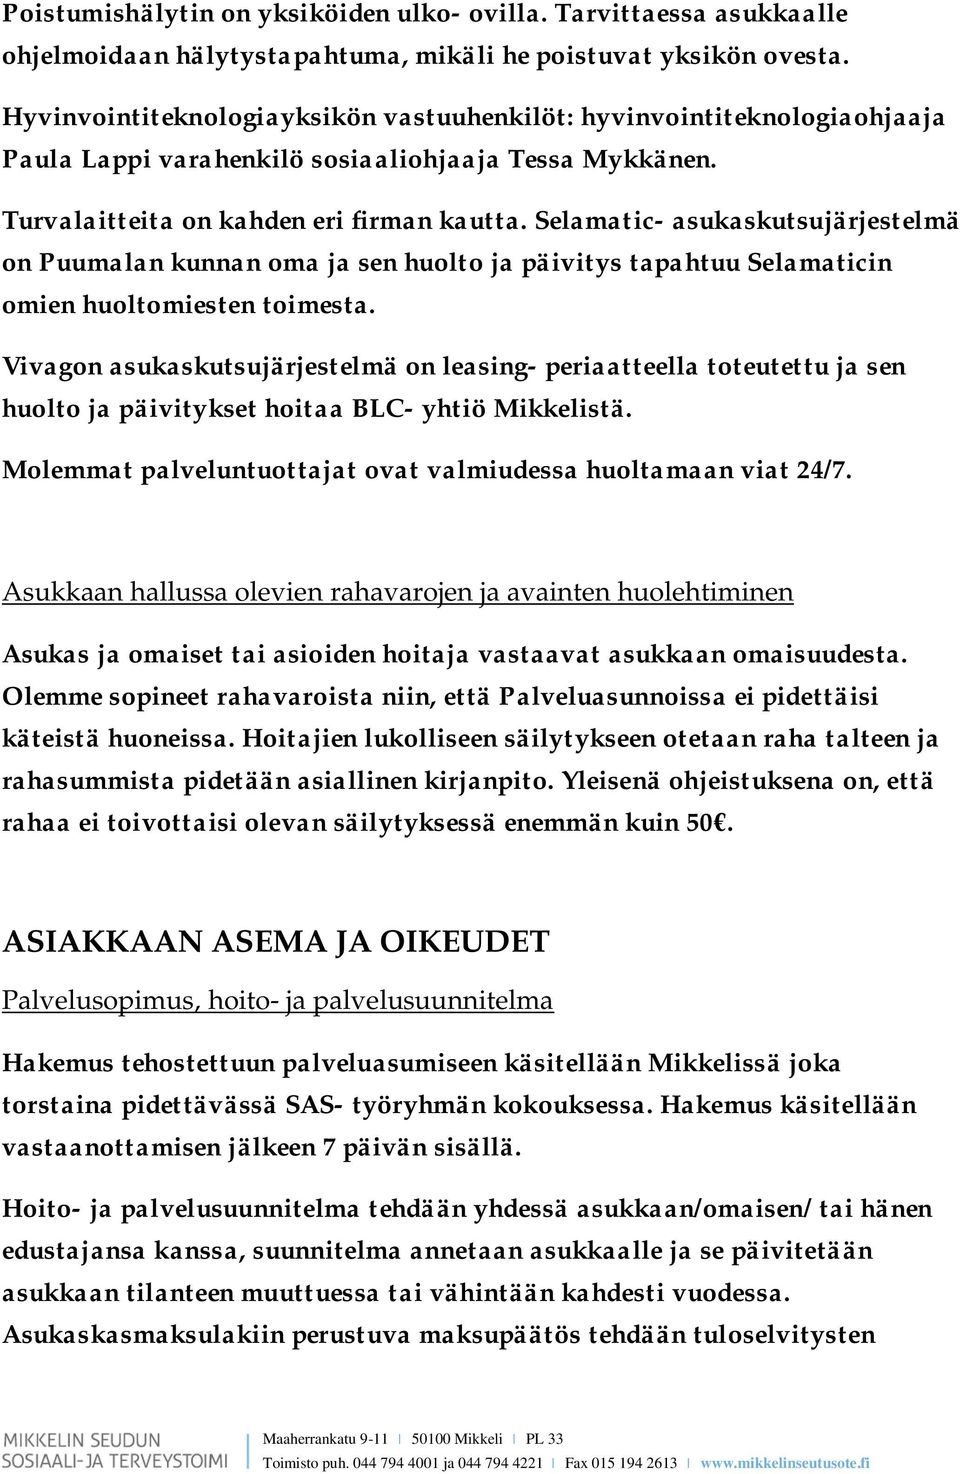 Selamatic- asukaskutsujärjestelmä on Puumalan kunnan oma ja sen huolto ja päivitys tapahtuu Selamaticin omien huoltomiesten toimesta.